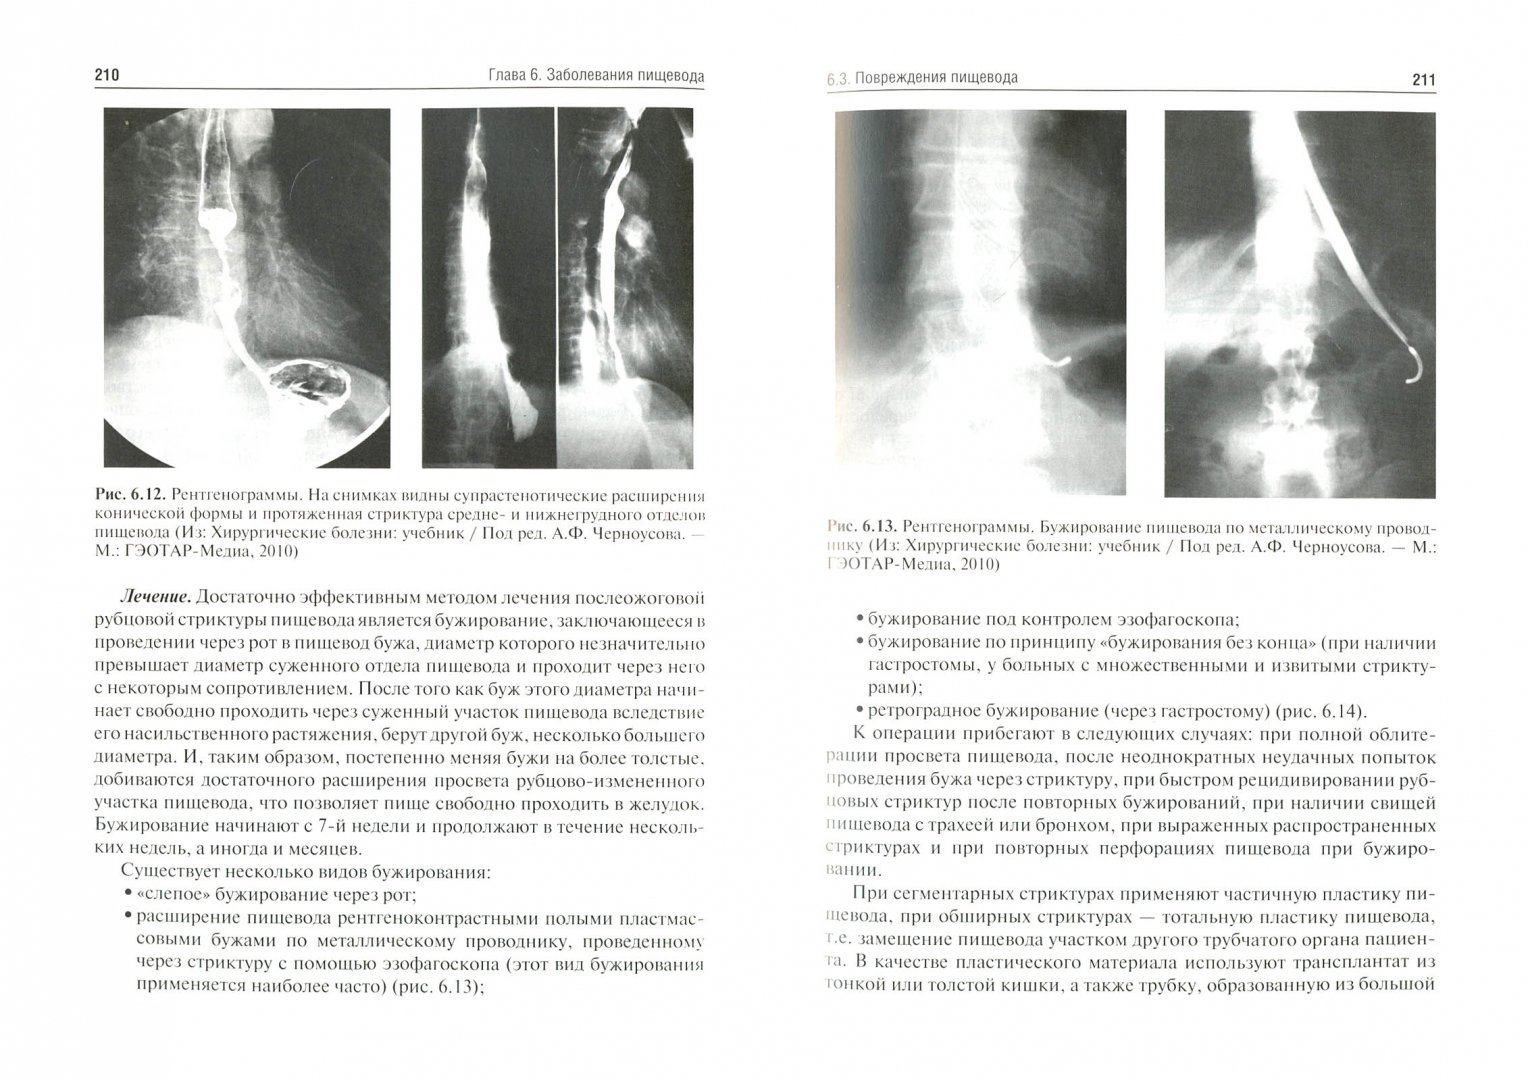 Иллюстрация 1 из 6 для Хирургические болезни. Учебник - Даурен Нурмаков | Лабиринт - книги. Источник: Лабиринт